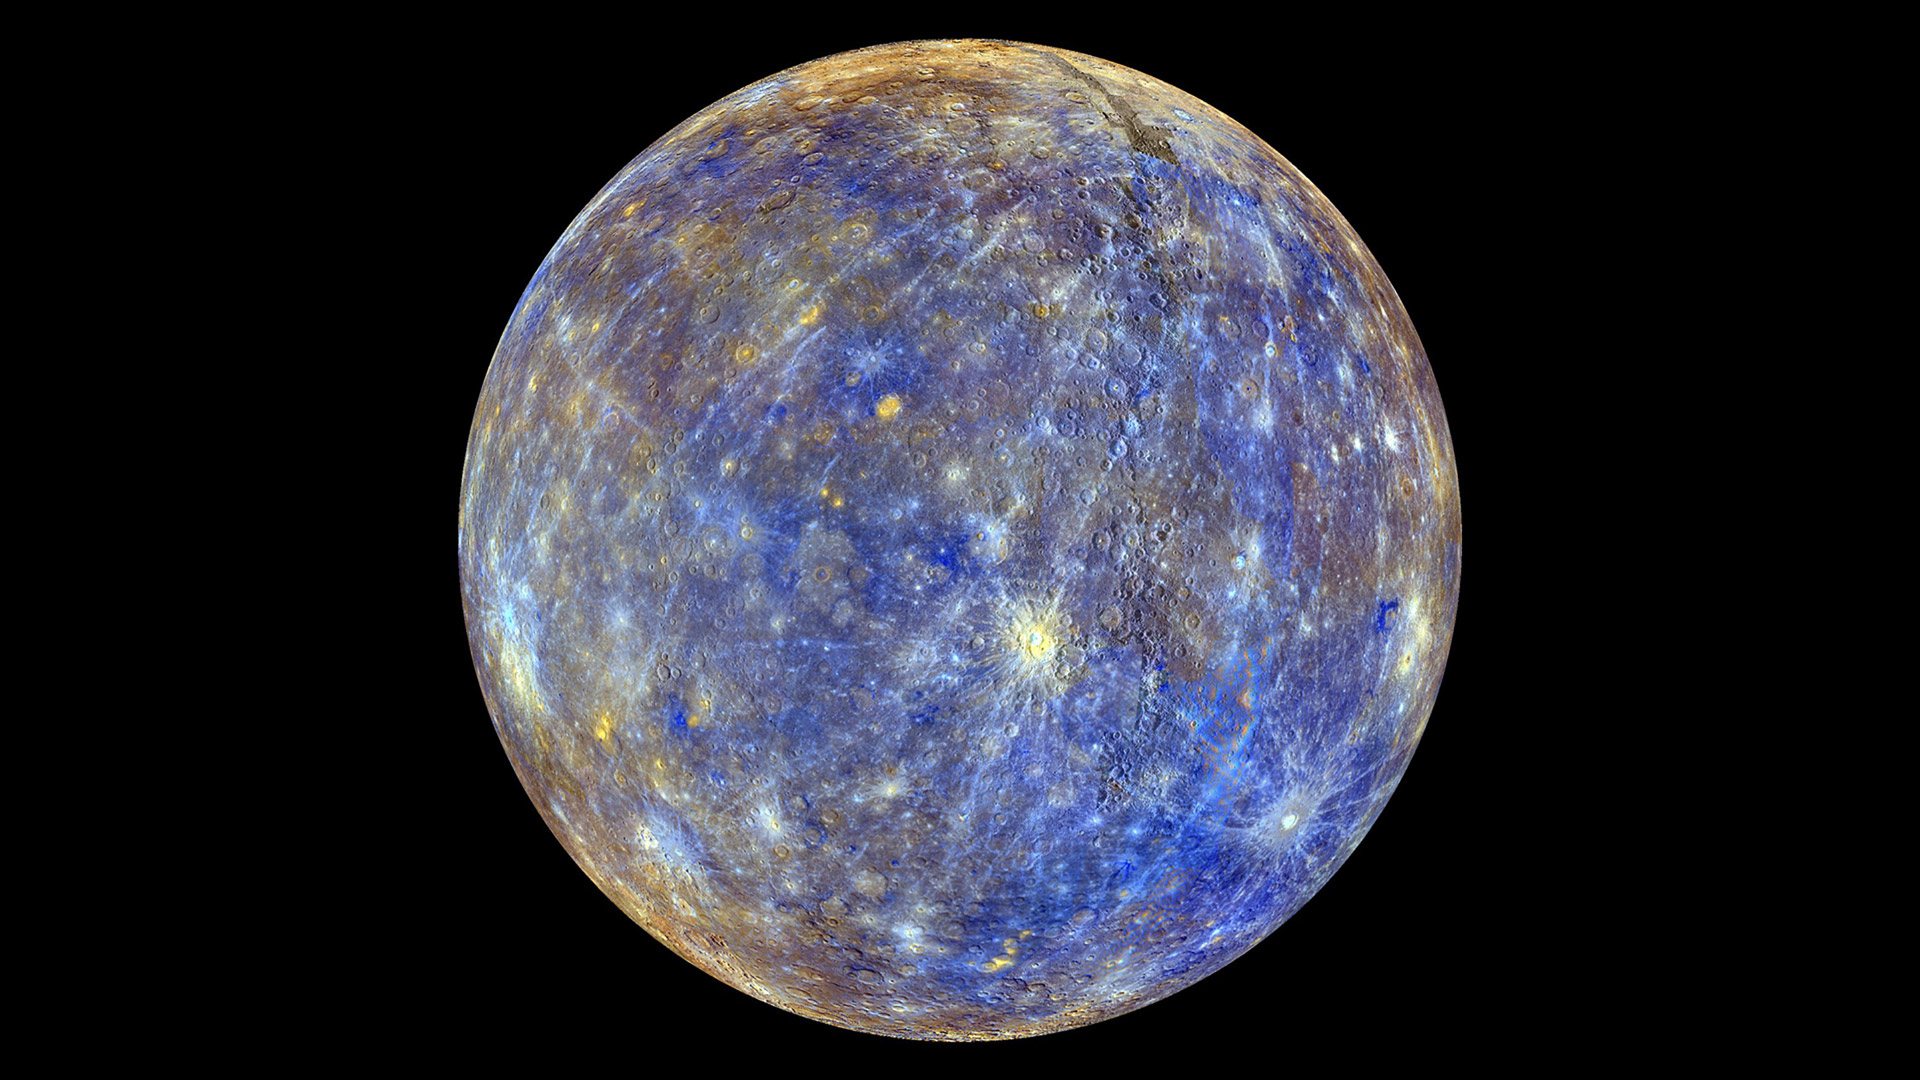 Las últimas (y coloridas) imágenes del planeta Mercurio enviadas por la sonda Messenger (HD)